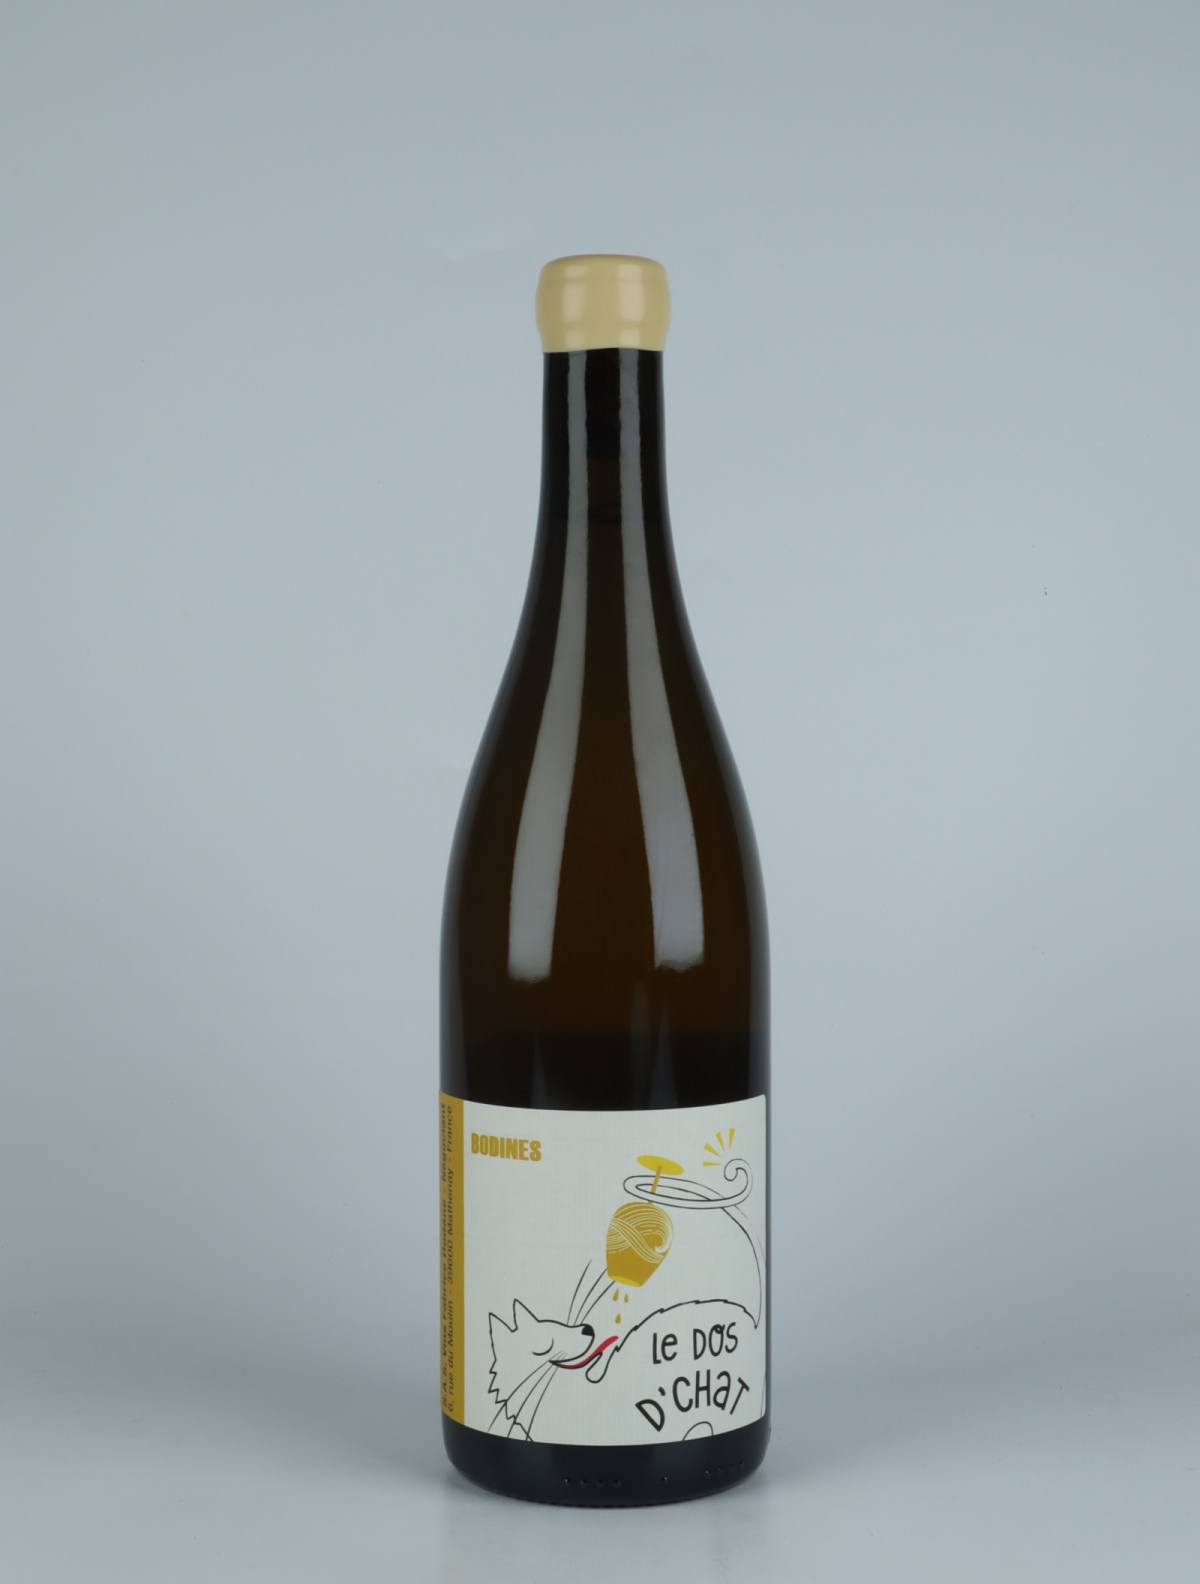 A bottle 2022 Arbois Blanc - Les Bodines White wine from Fabrice Dodane, Jura in France